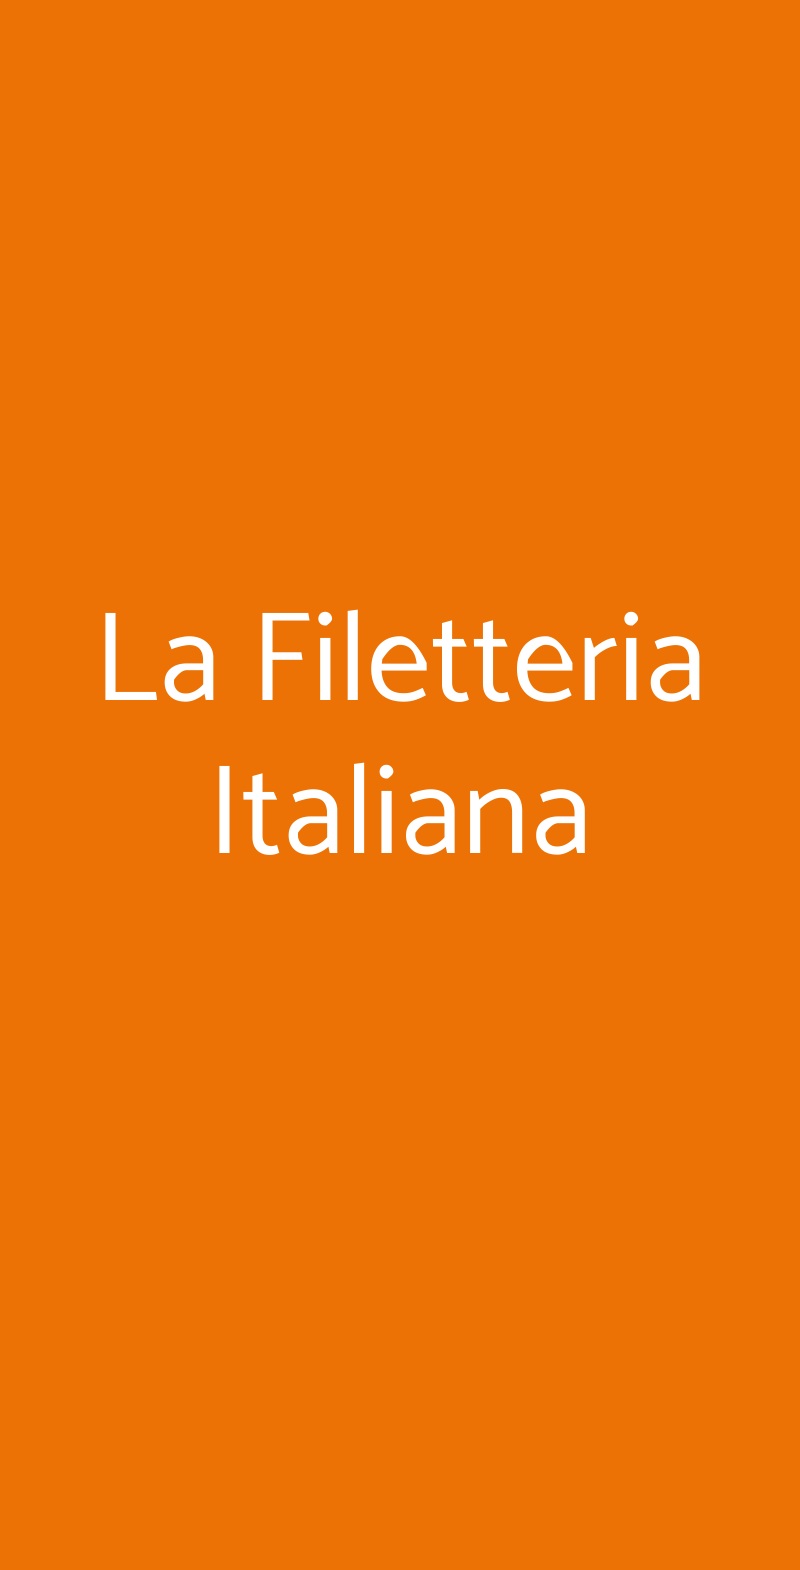 La Filetteria Italiana Milano menù 1 pagina